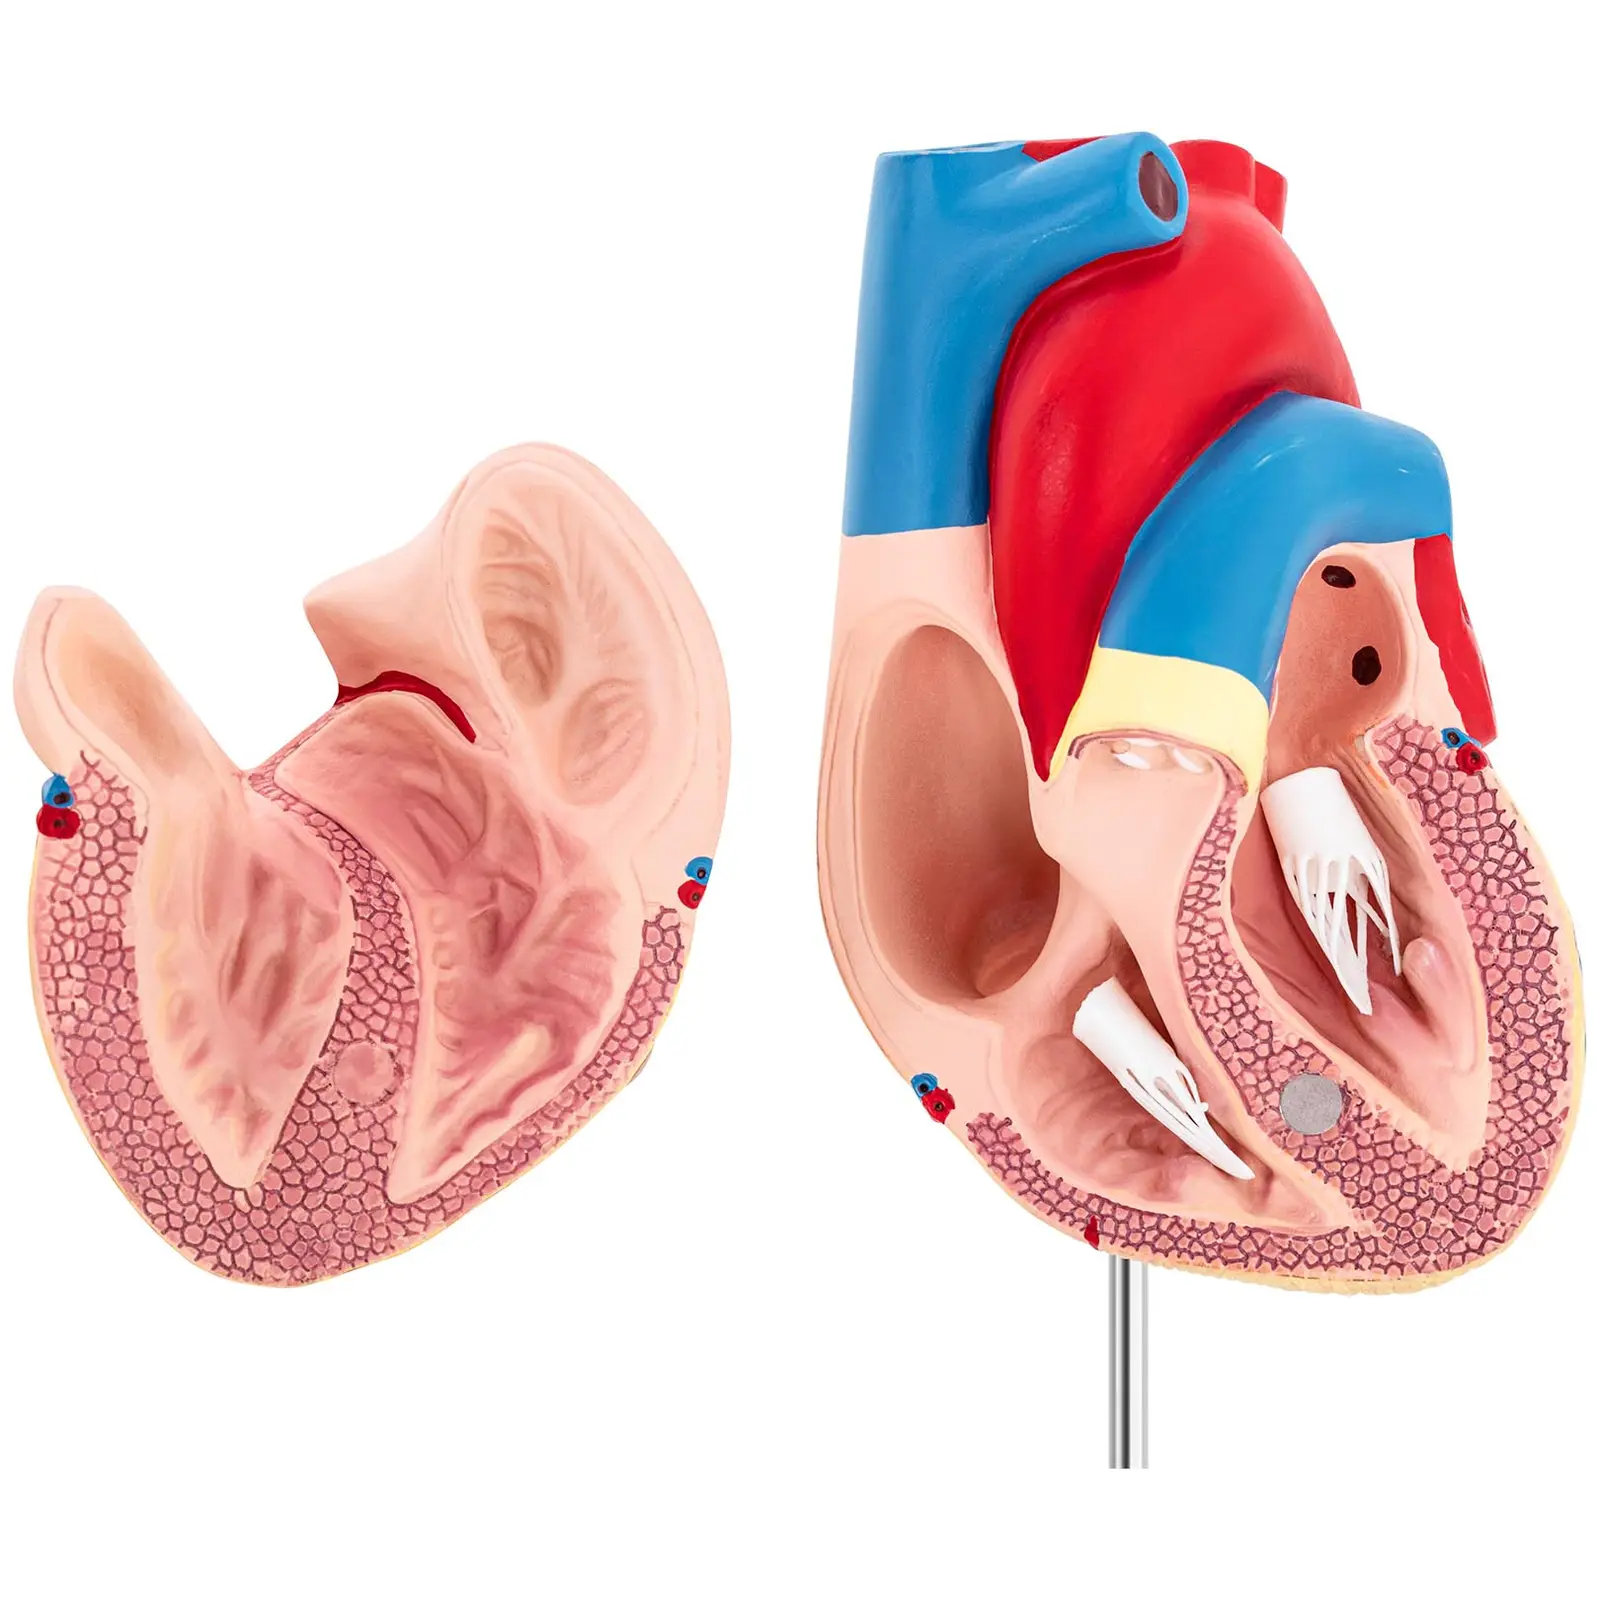 Maquette anatomique du cœur humain - En 2 parties - Grandeur nature